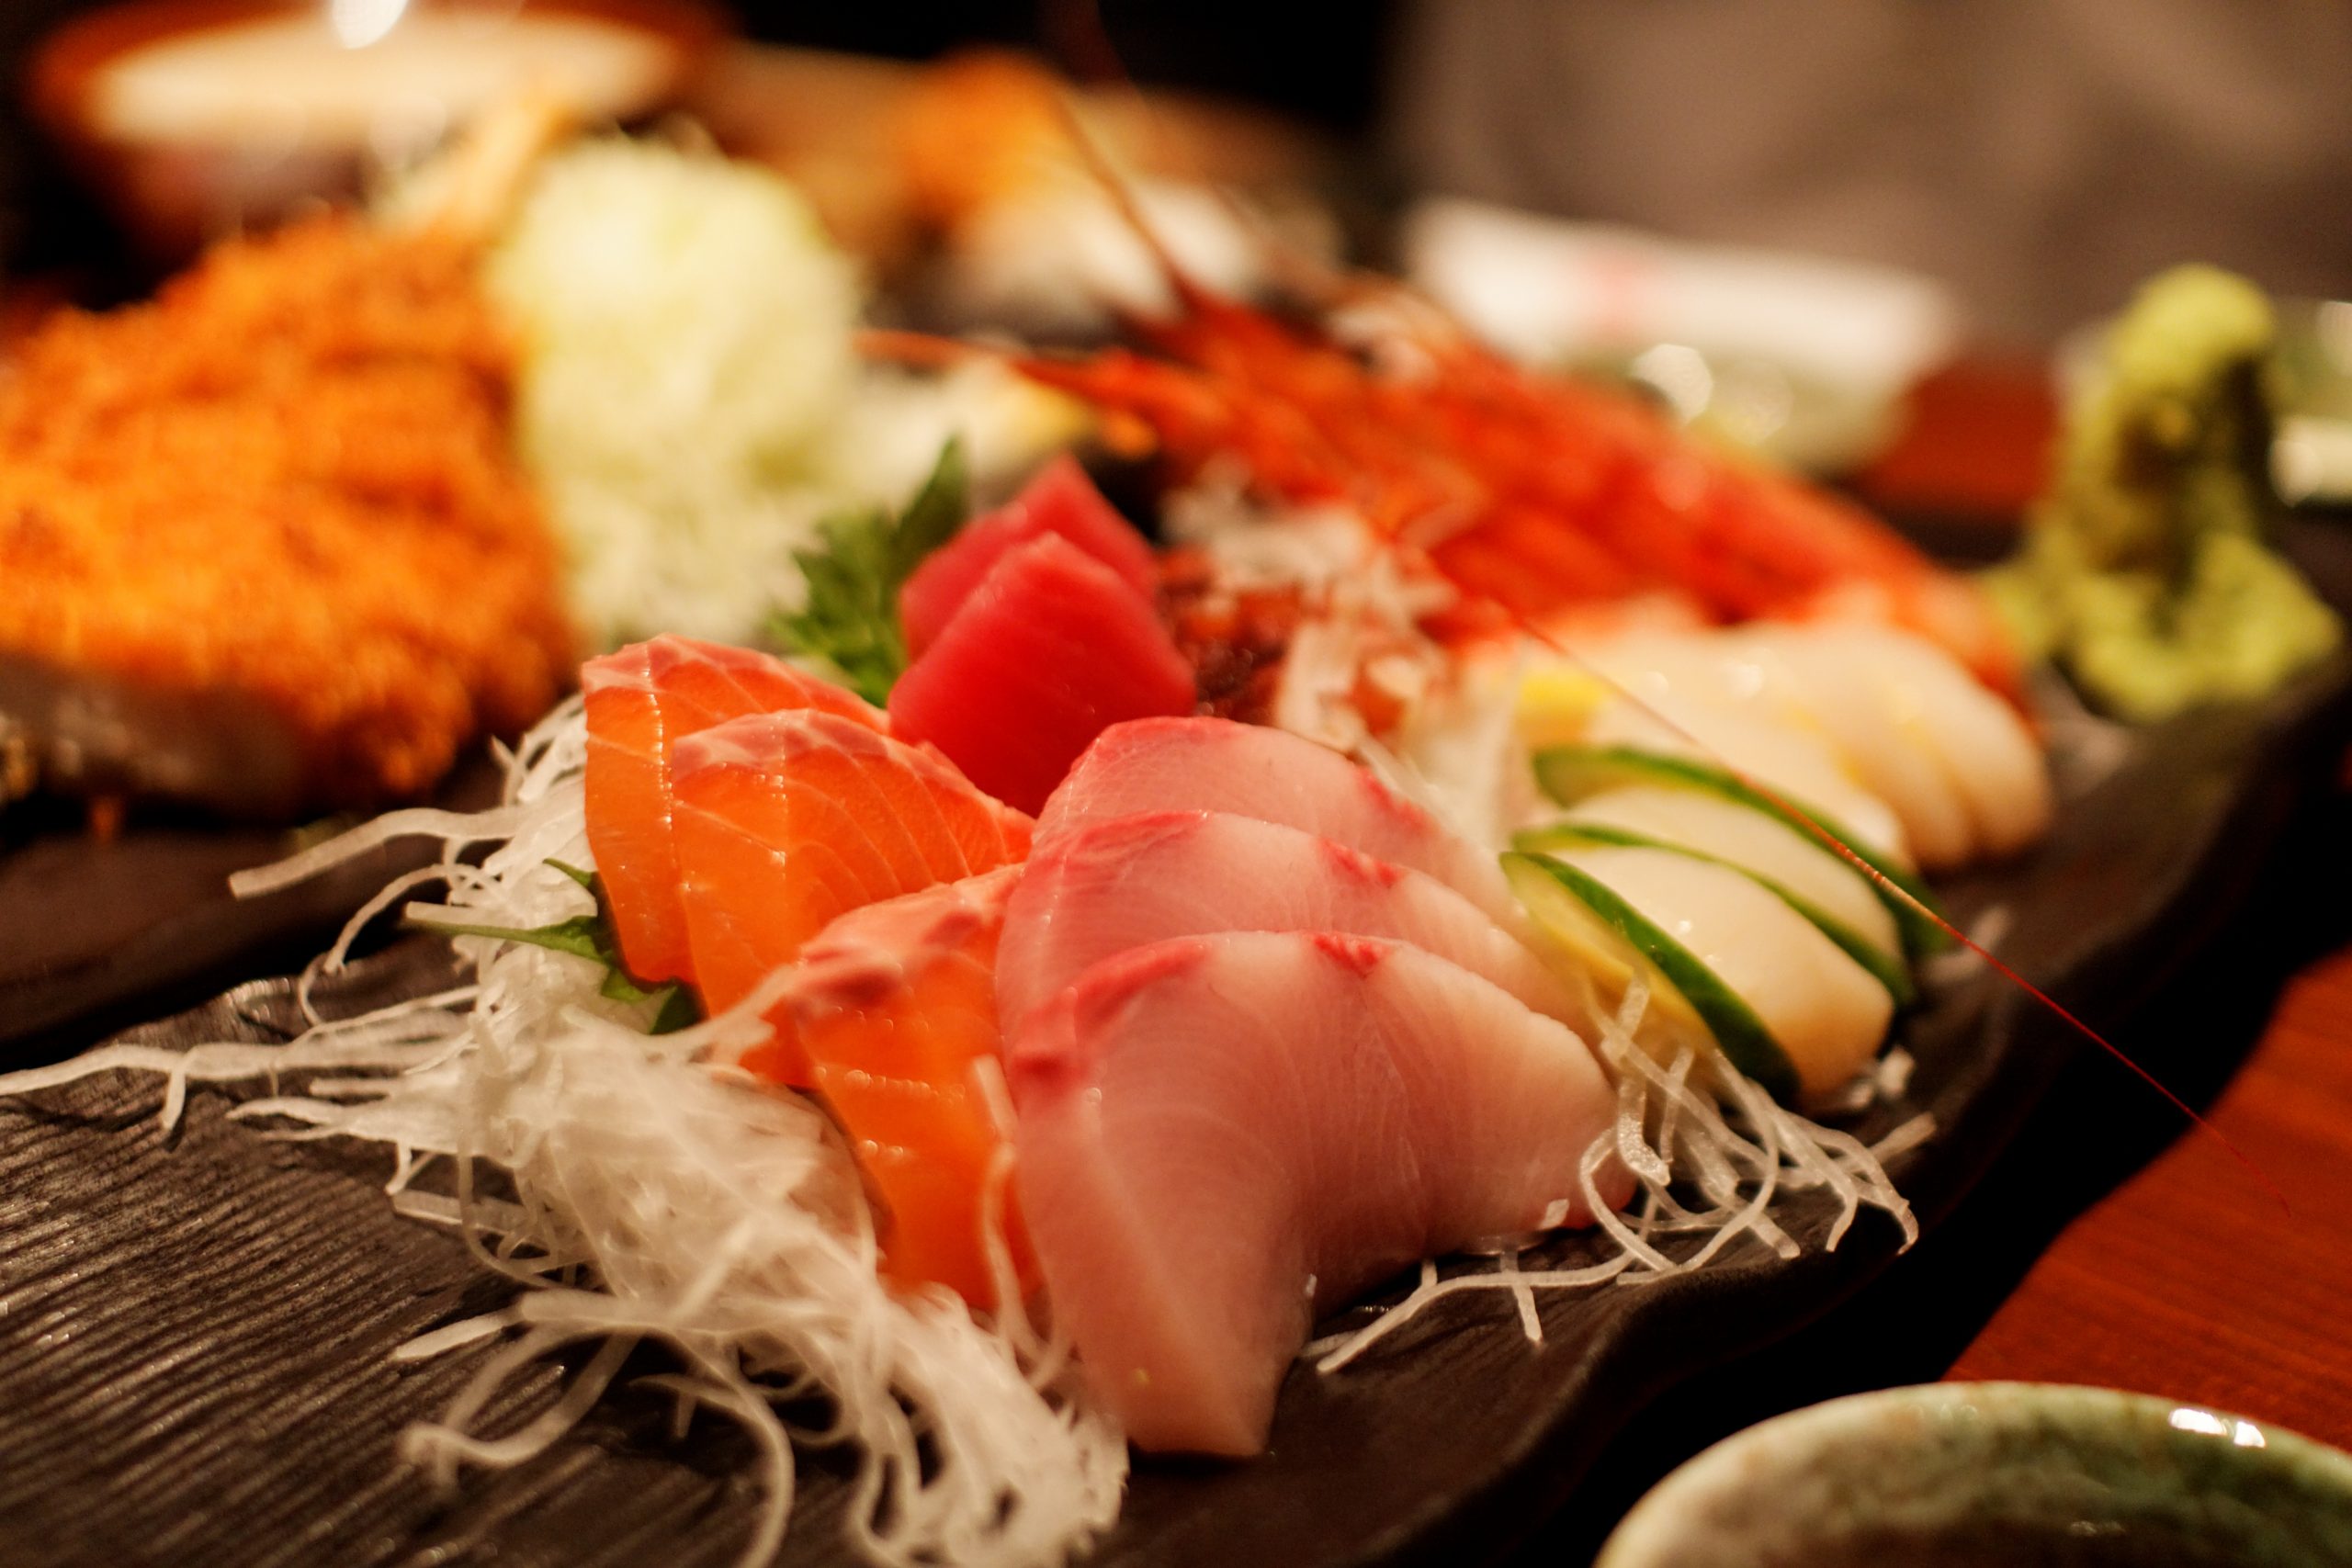 How to eat Sashimi